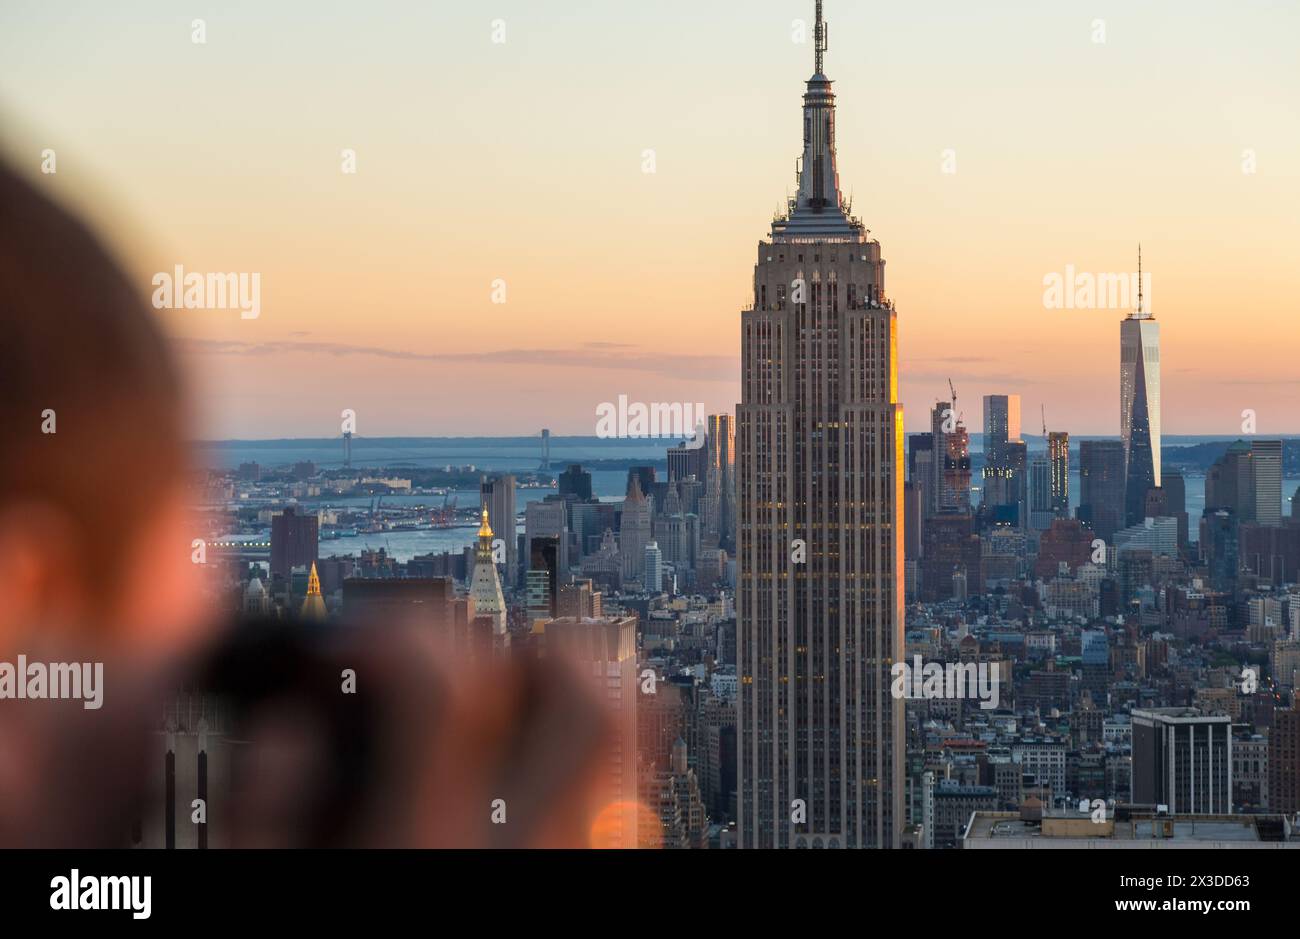 Homme avec appareil photo photographiant la vue sur l'Empire State Building et la ligne d'horizon, Manhattan, New York, États-Unis Banque D'Images